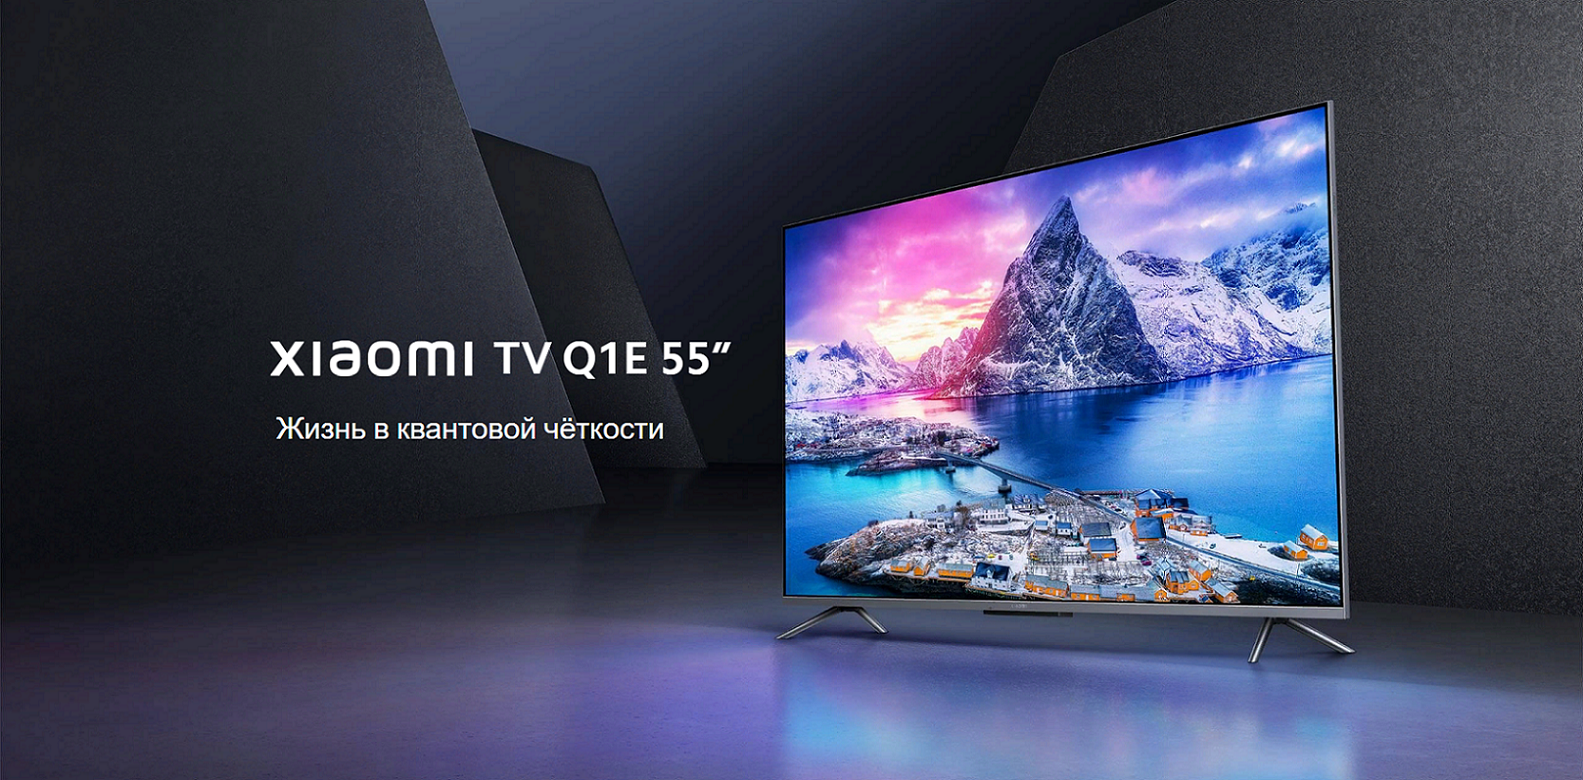 Телевизор 55 qled серый. Телевизор Xiaomi q1e 55″ QLED. Телевизор Xiaomi mi TV q1e 55. Телевизор Xiaomi mi TV q1 75". Телевизор QLED Xiaomi mi TV 5 55 Pro 55".